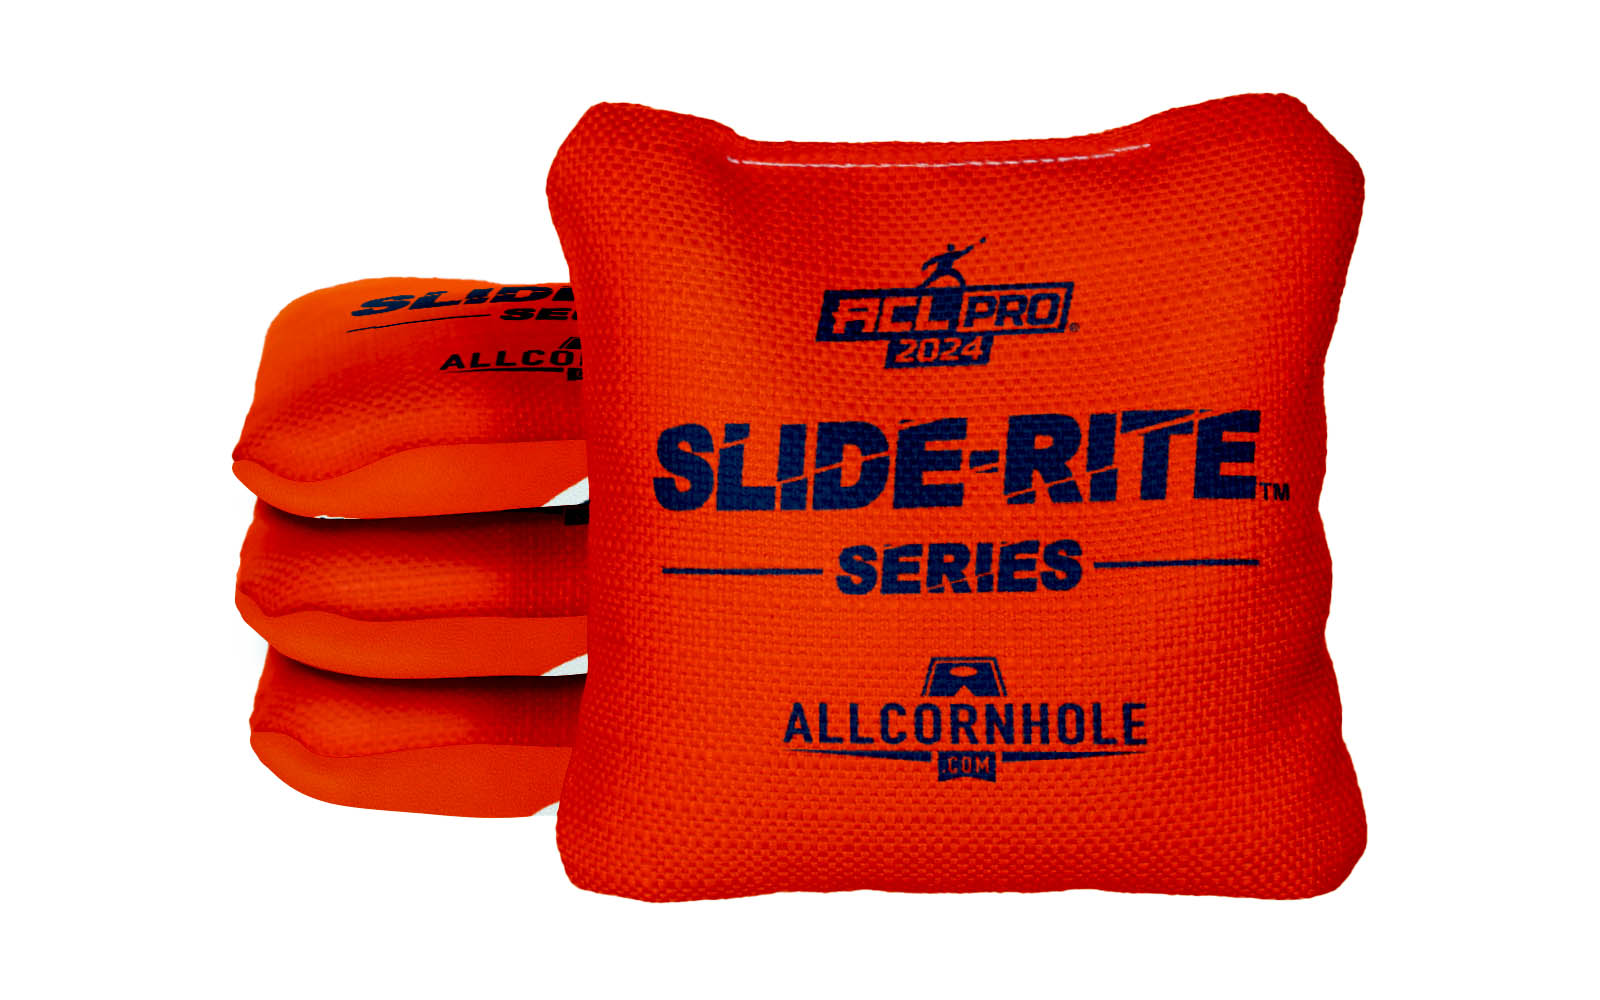 Officially Licensed Collegiate Cornhole Bags - AllCornhole Slide Rite - Set of 4 - Auburn University